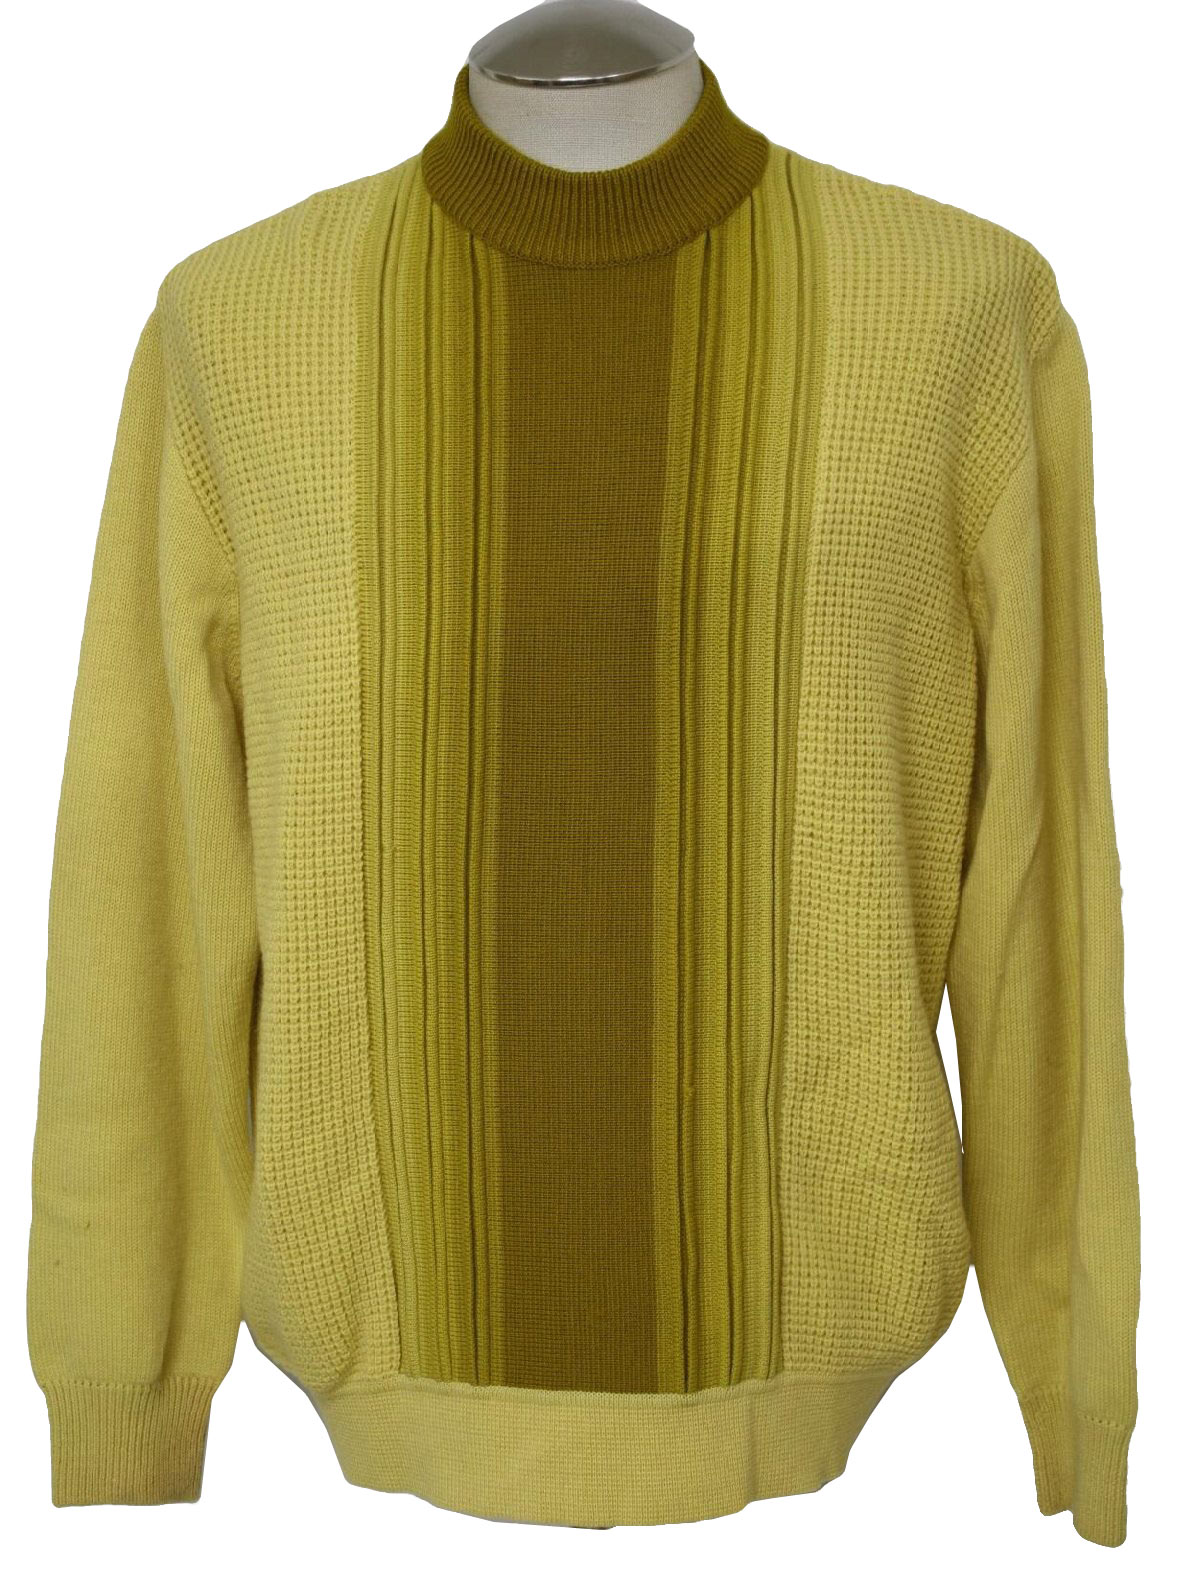 1960's Vintage Damon Caridgan Sweater: 60s -Damon- Mens pullover wool ...